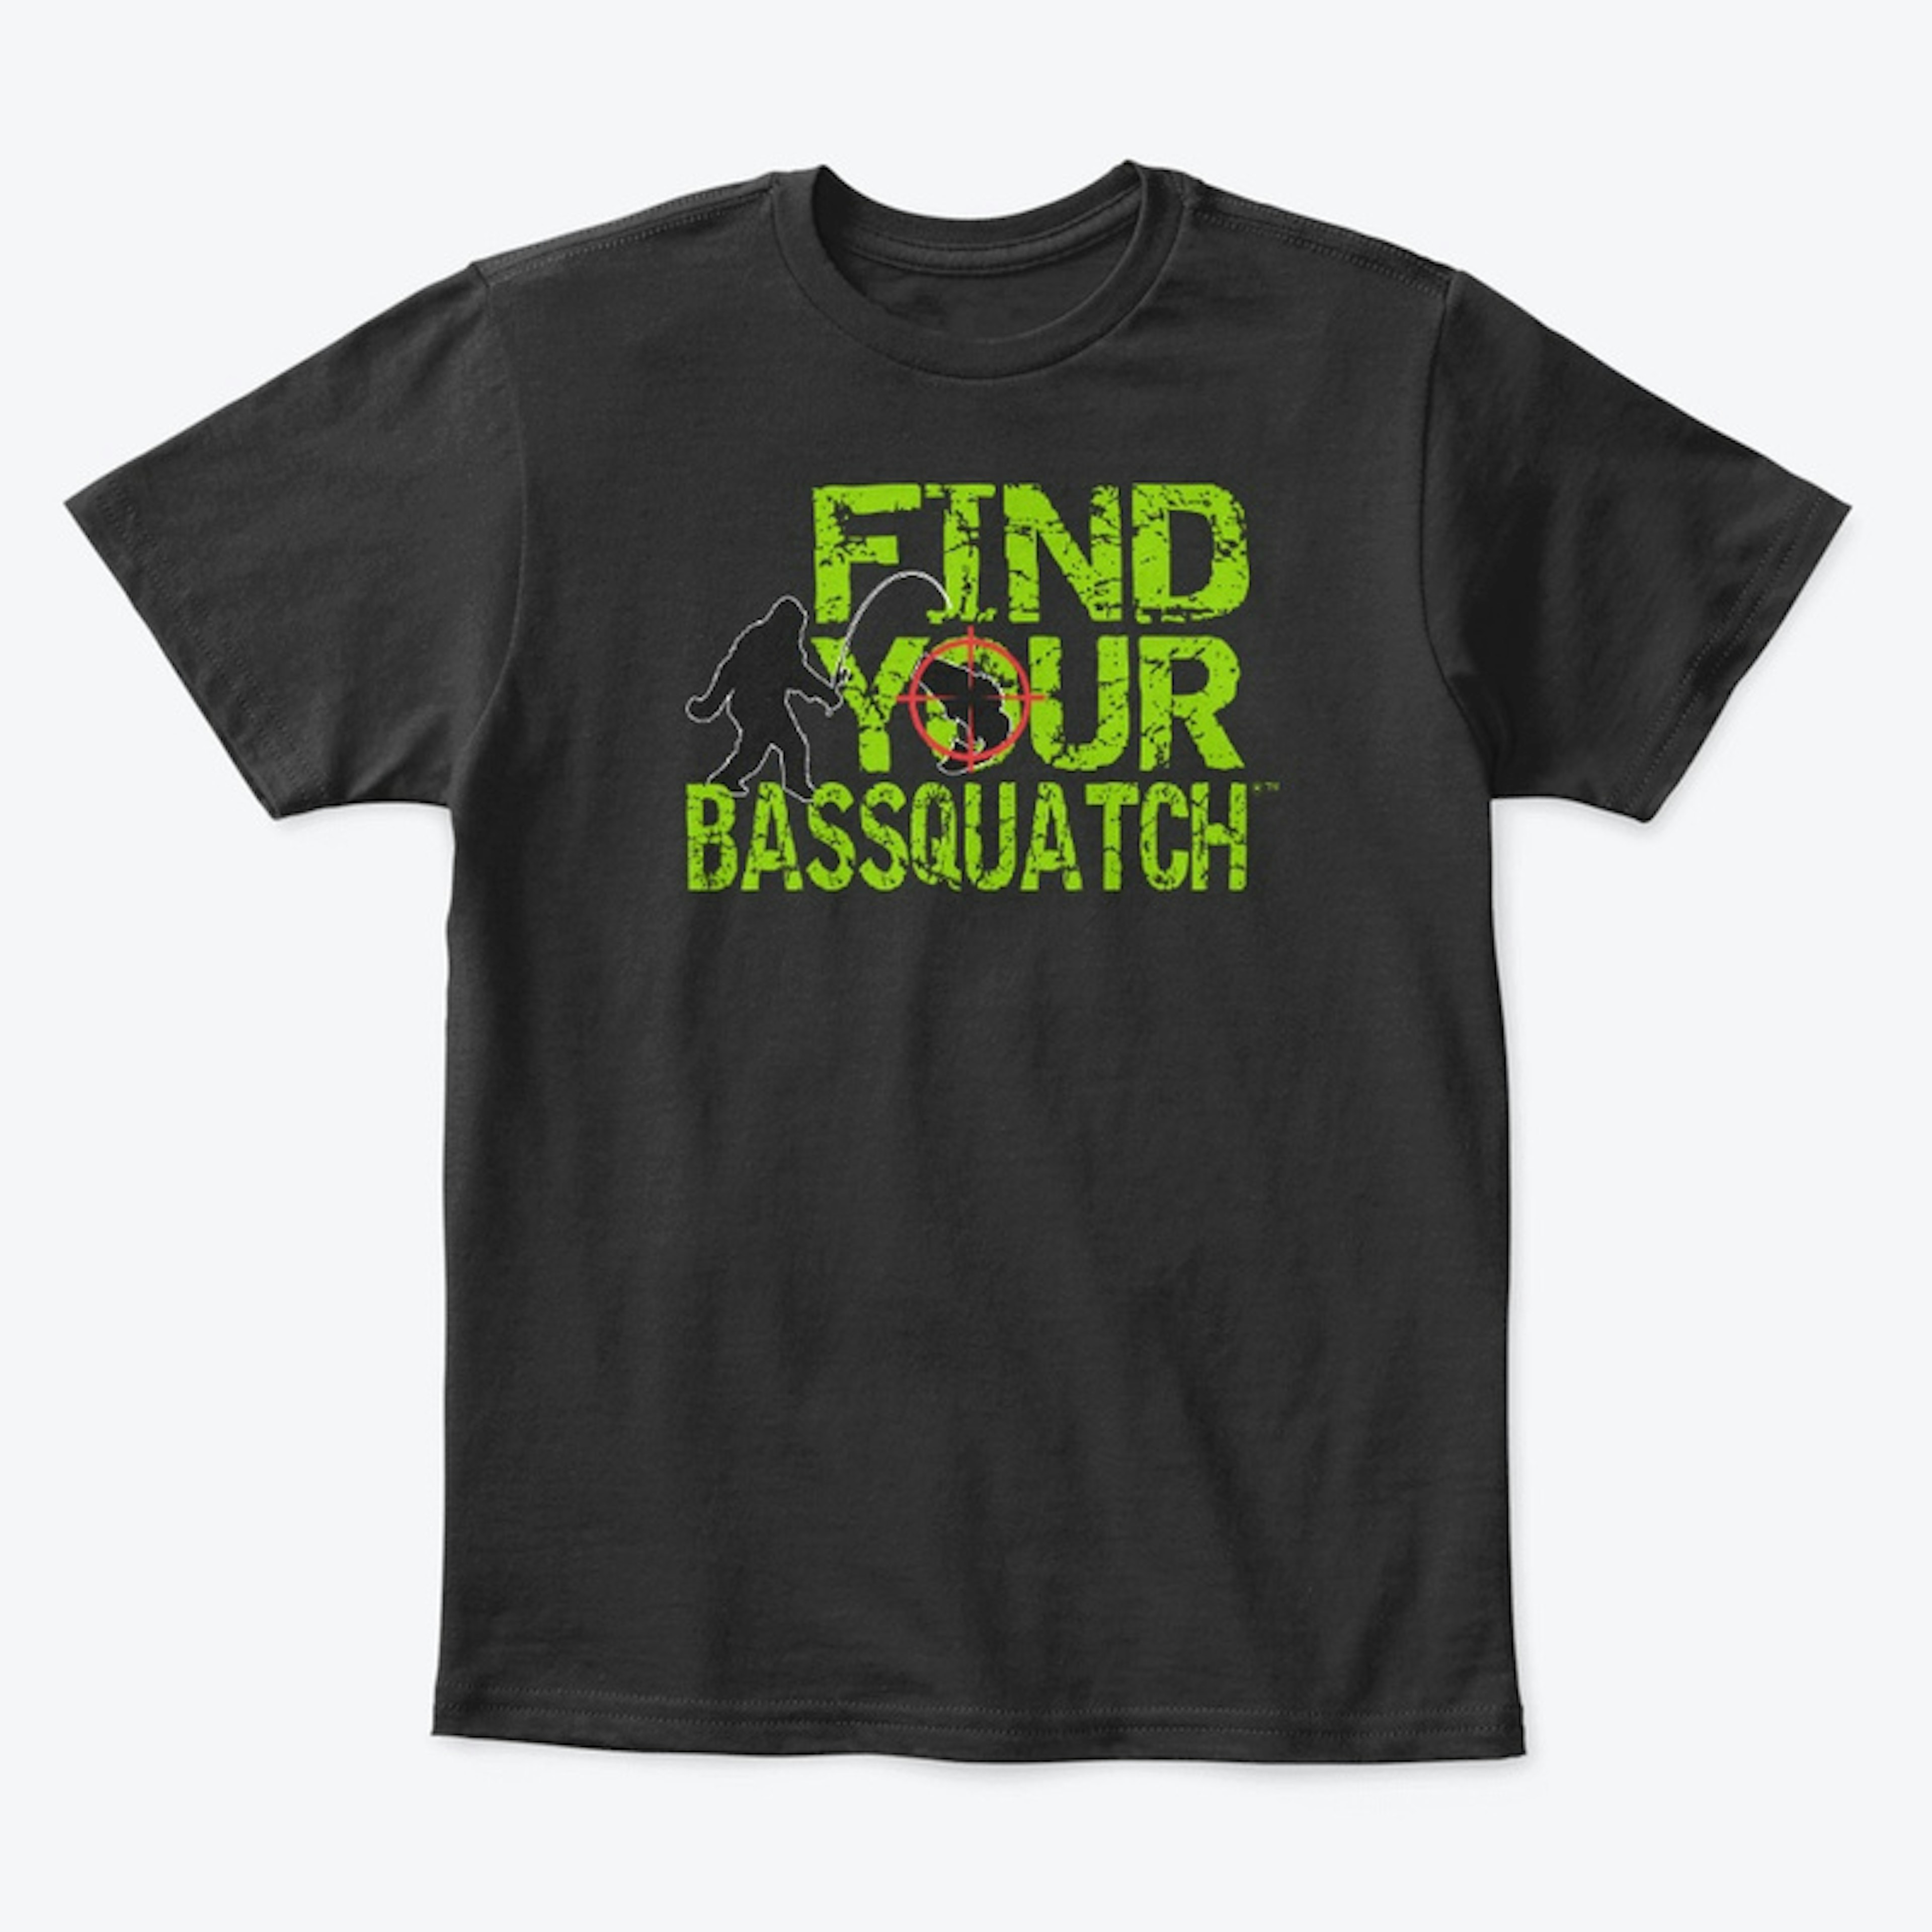 kids bassquatch shirt!